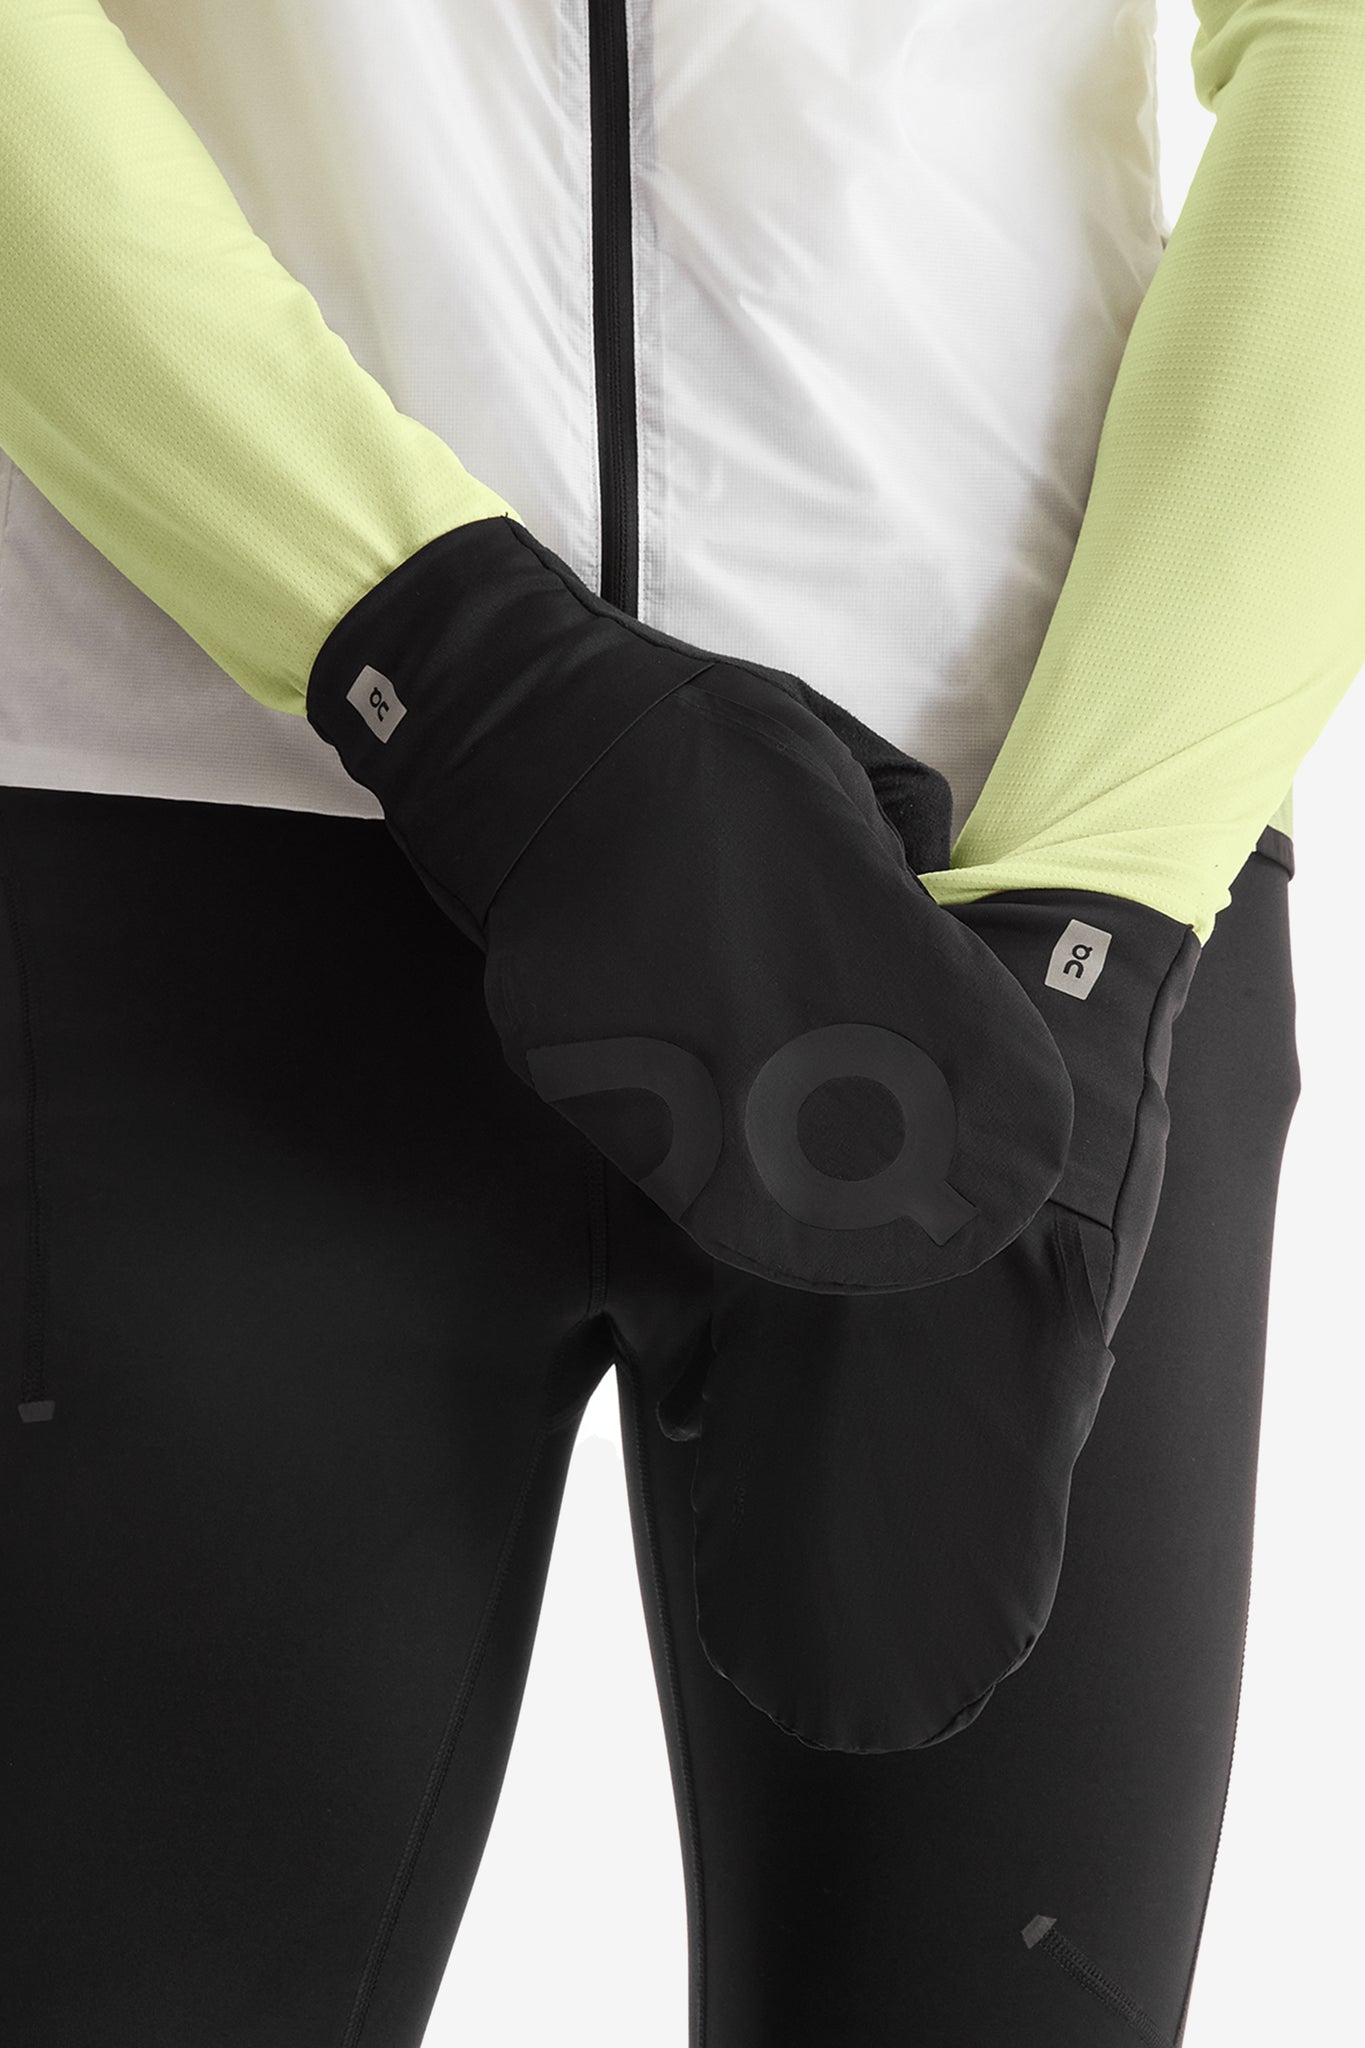 ON Unisex Weather Glove in Black